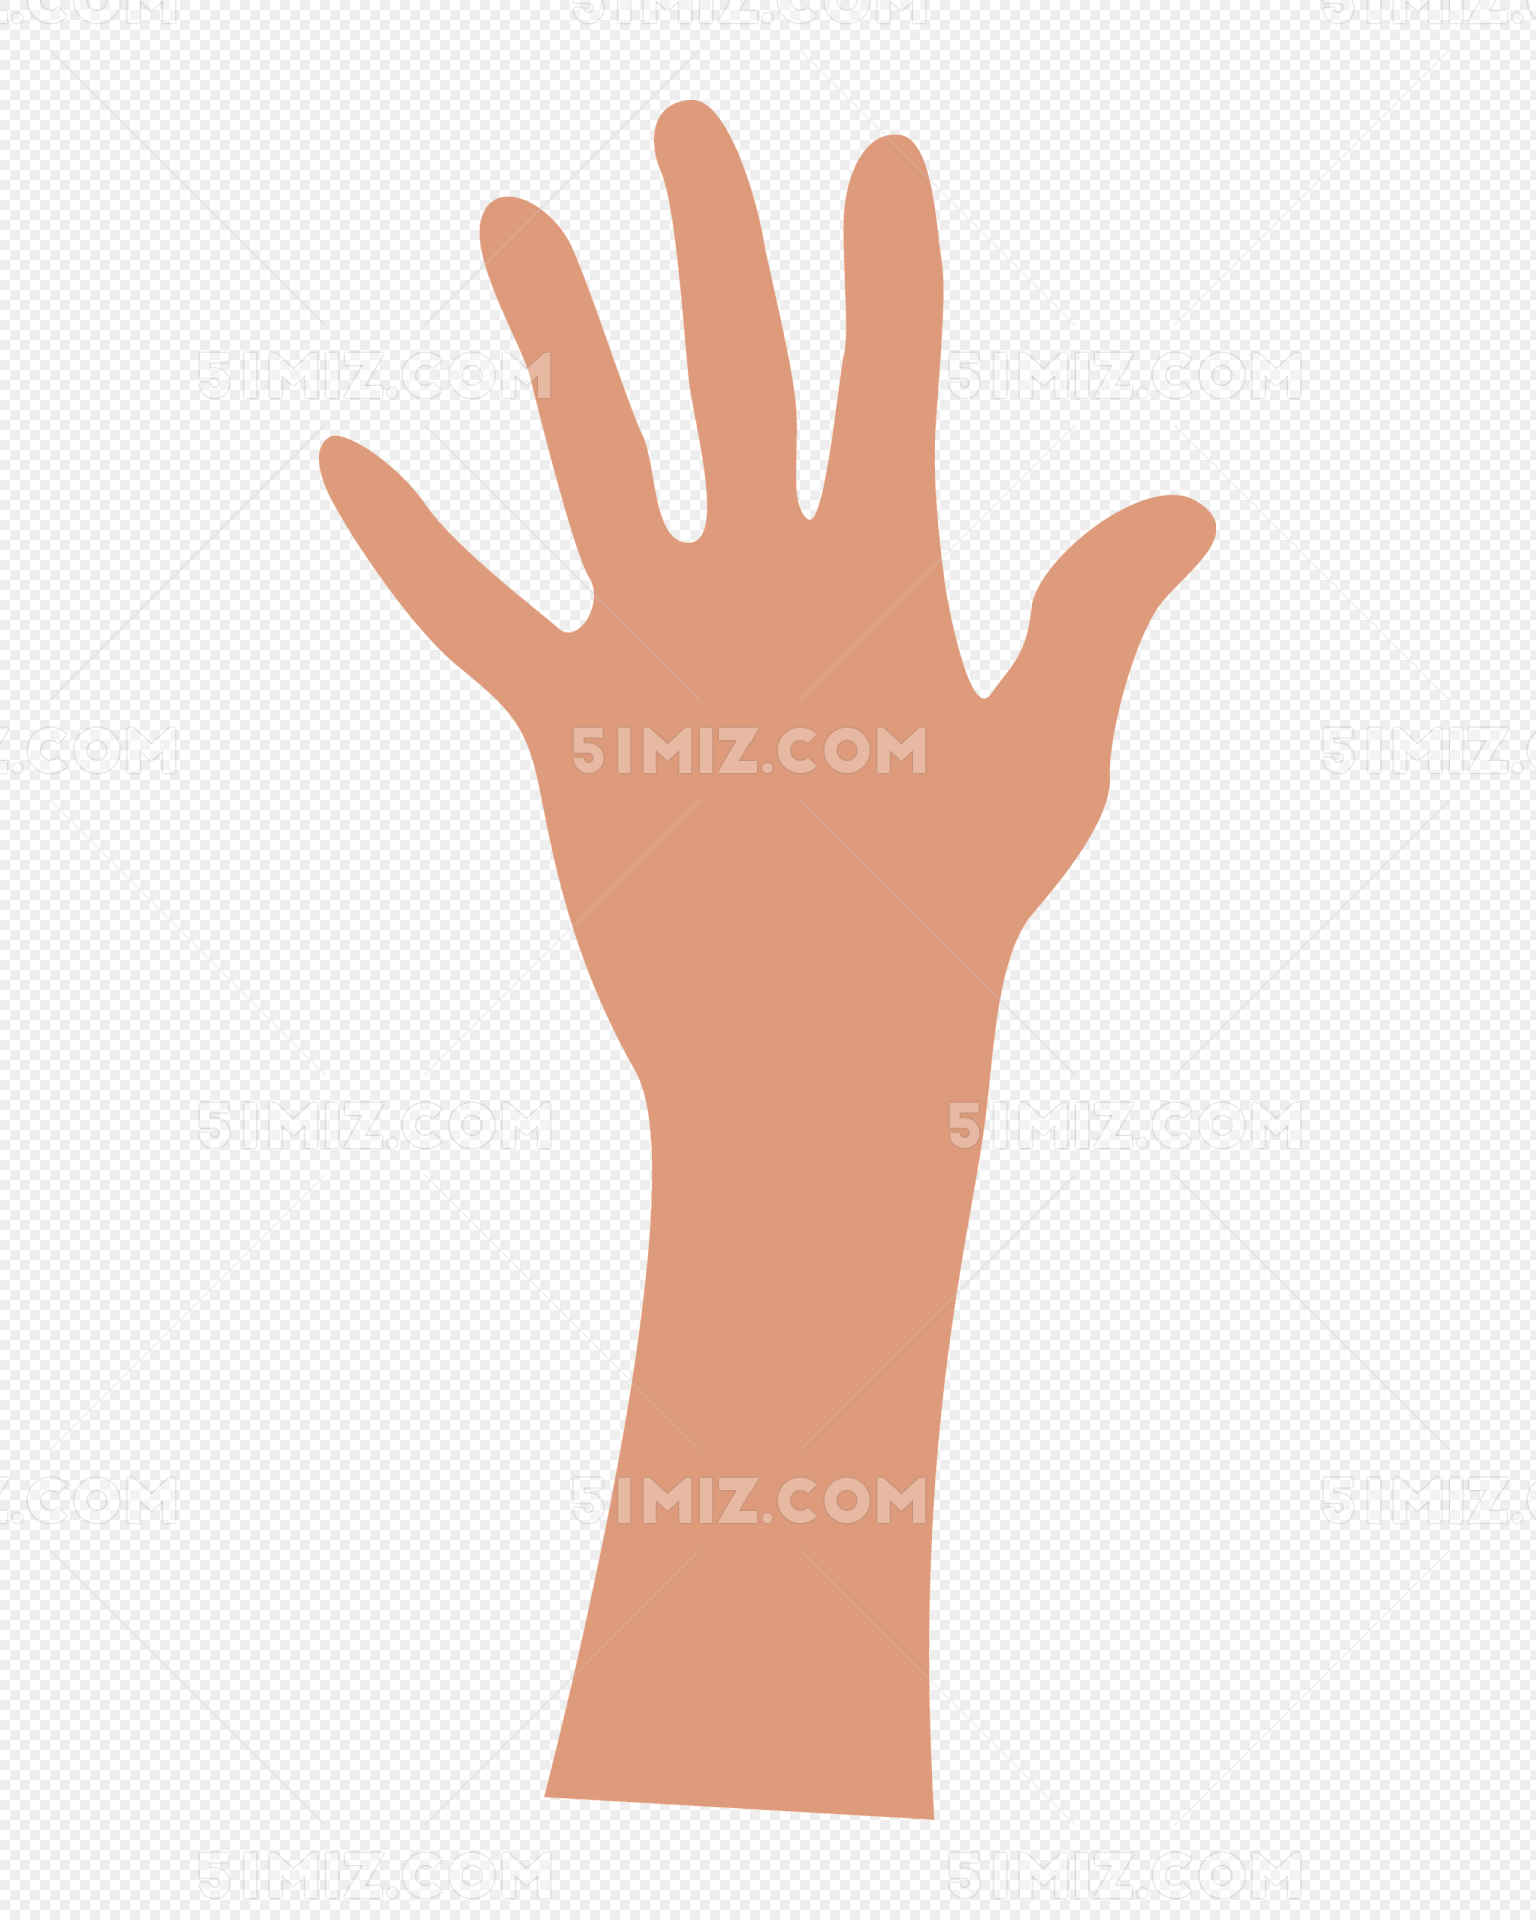 五根手指插畫 張開的手掌 創意手勢插畫 一隻手, 創意手勢插畫, 立體逼真的手, 張開的手掌素材圖案，PSD和PNG圖片免費下載